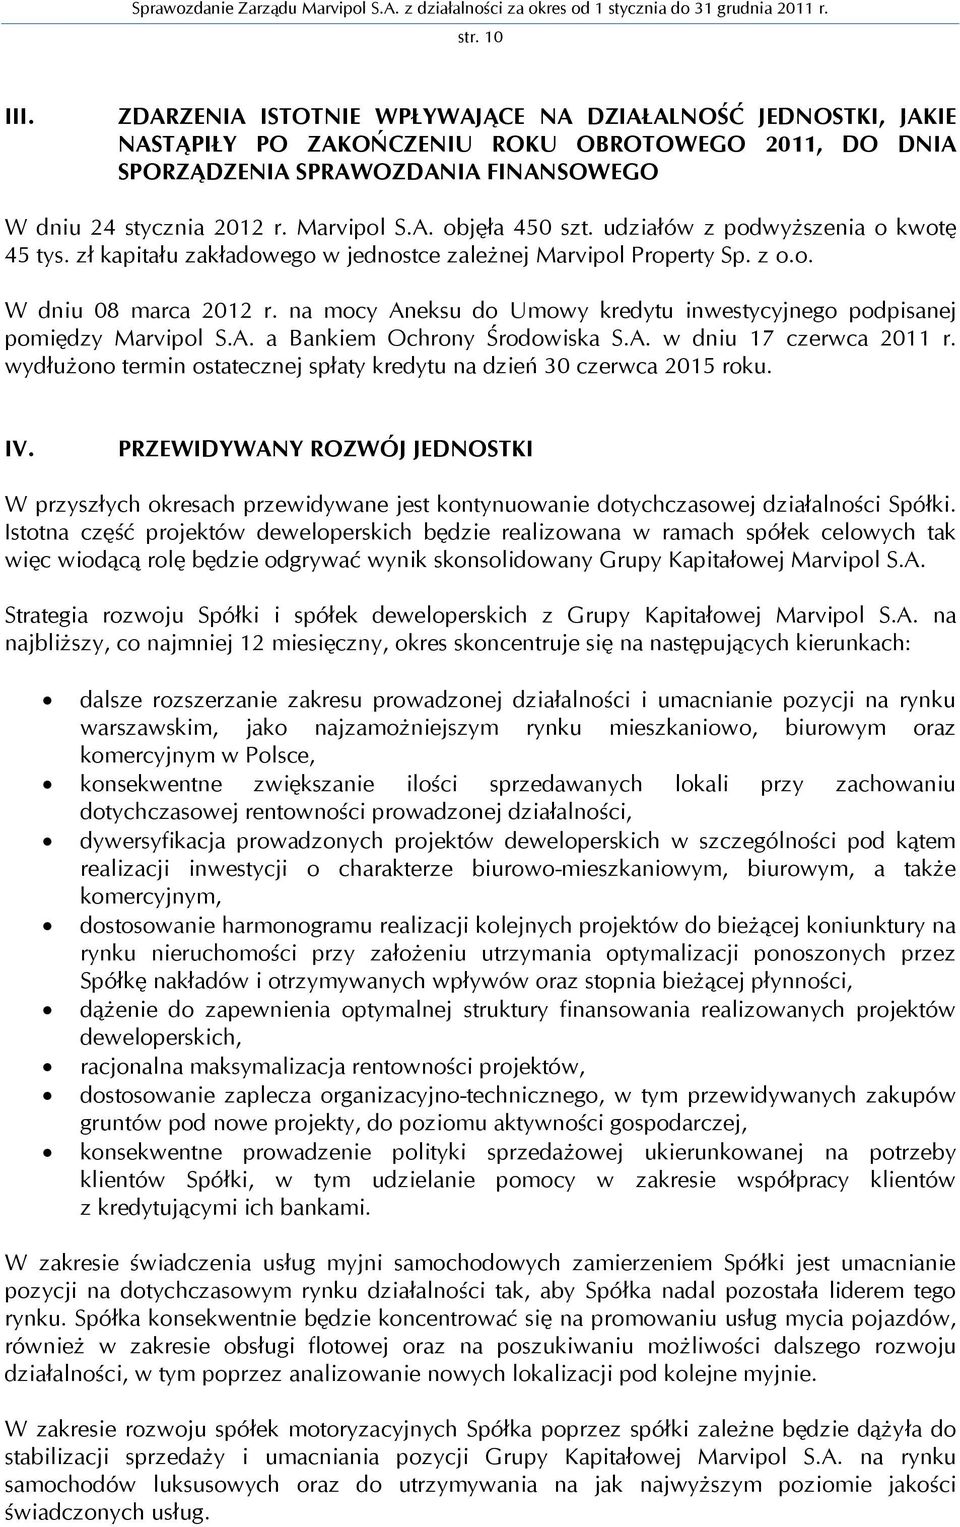 na mocy Aneksu do Umowy kredytu inwestycyjnego podpisanej pomiędzy Marvipol S.A. a Bankiem Ochrony Środowiska S.A. w dniu 17 czerwca 2011 r.